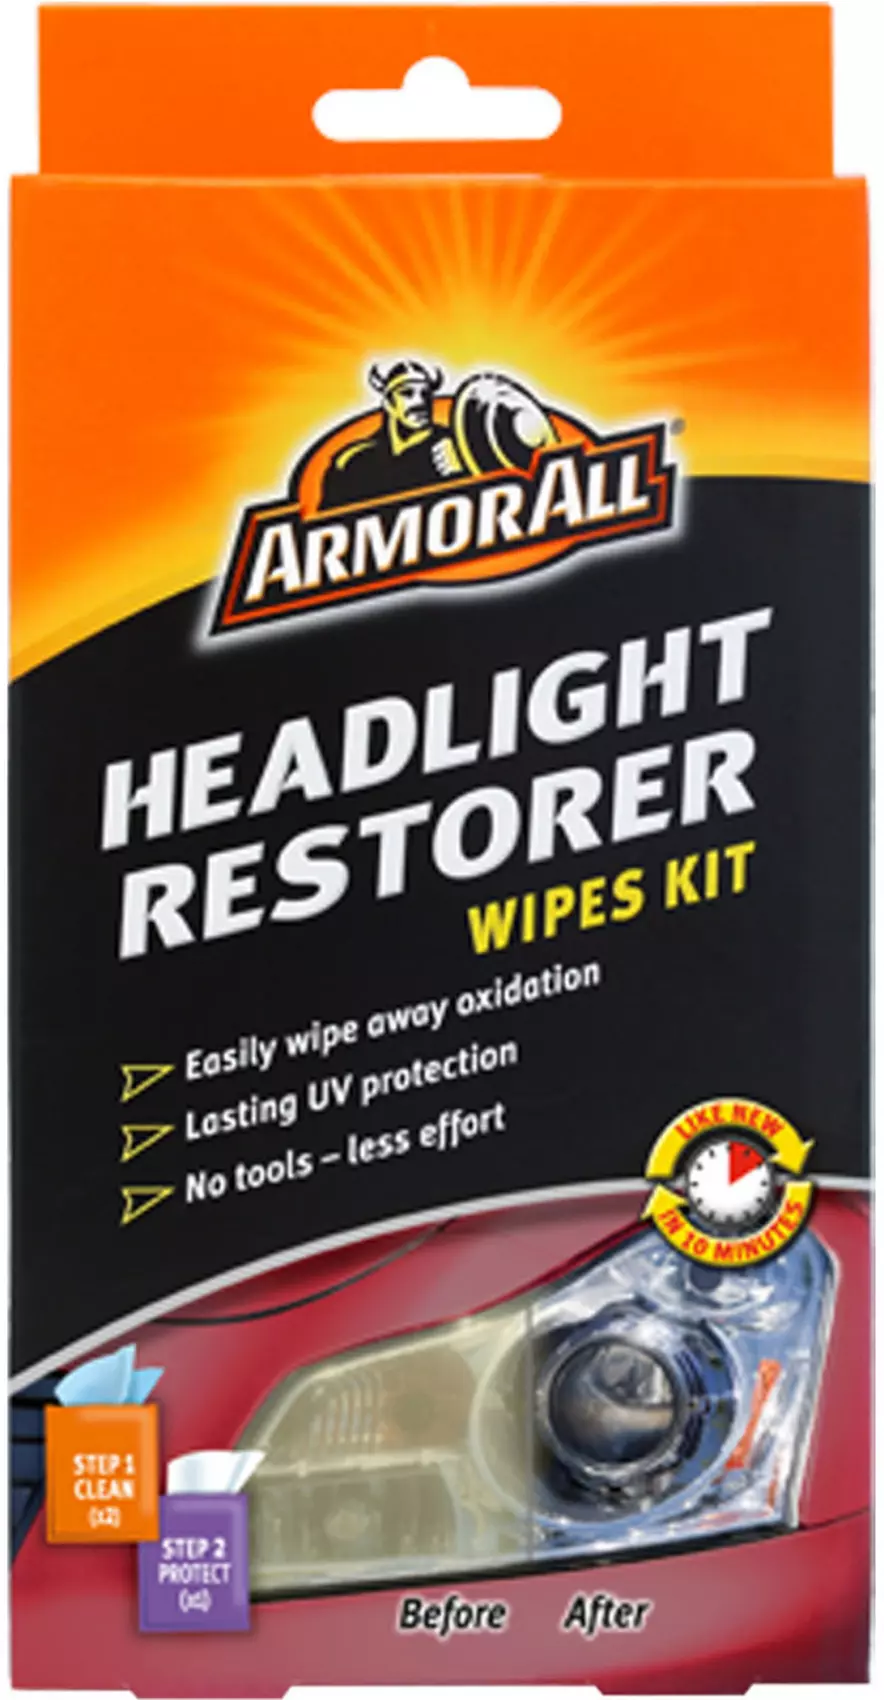 Headlight Restorer Wipes Kit Armor All - 18514 - Pro Detailing